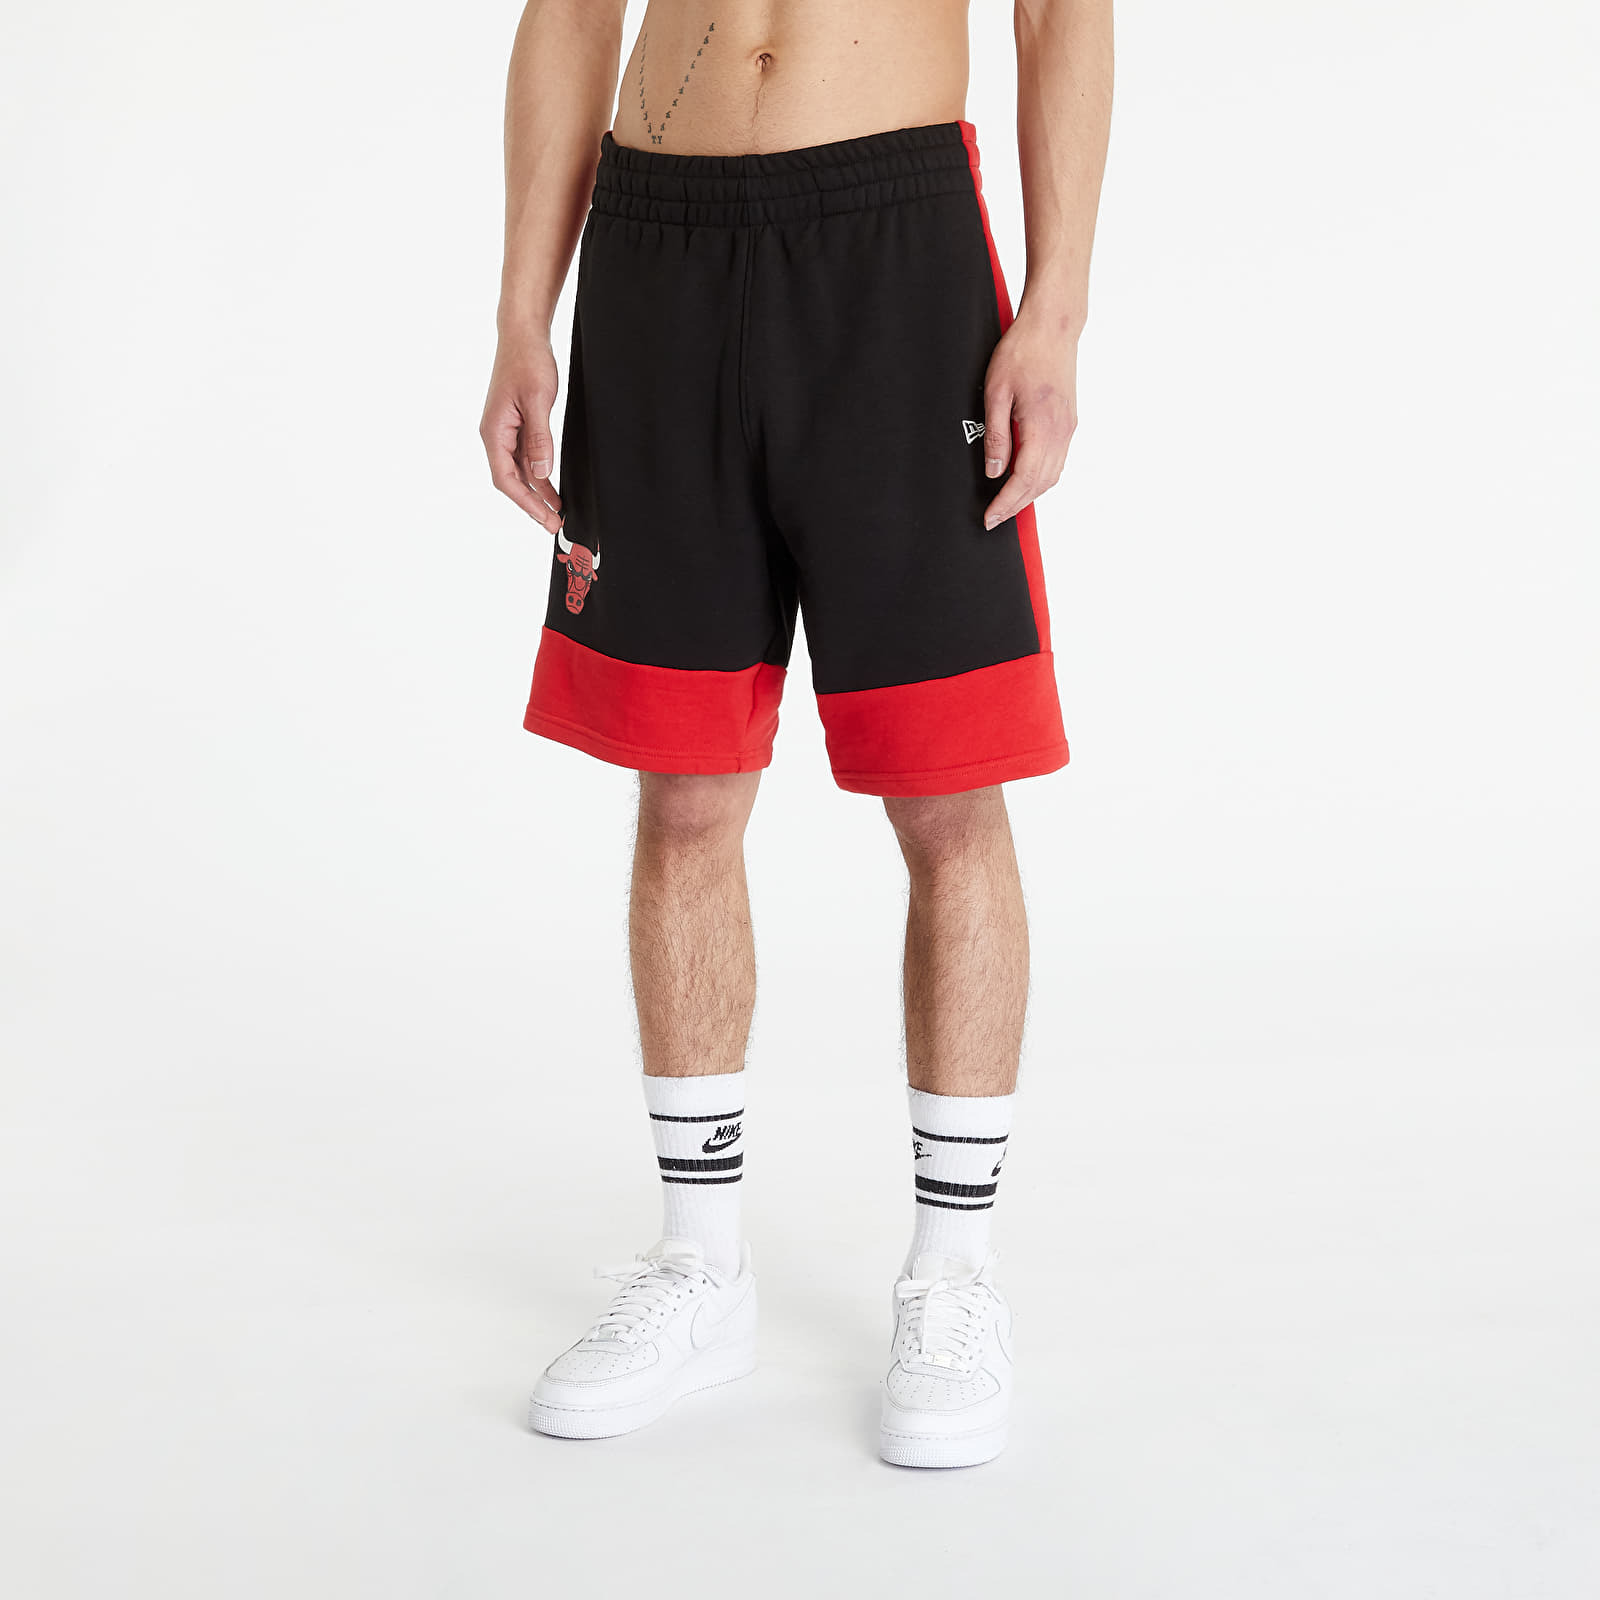 Footshop - Men's Shorts in Red - New Era GOOFASH